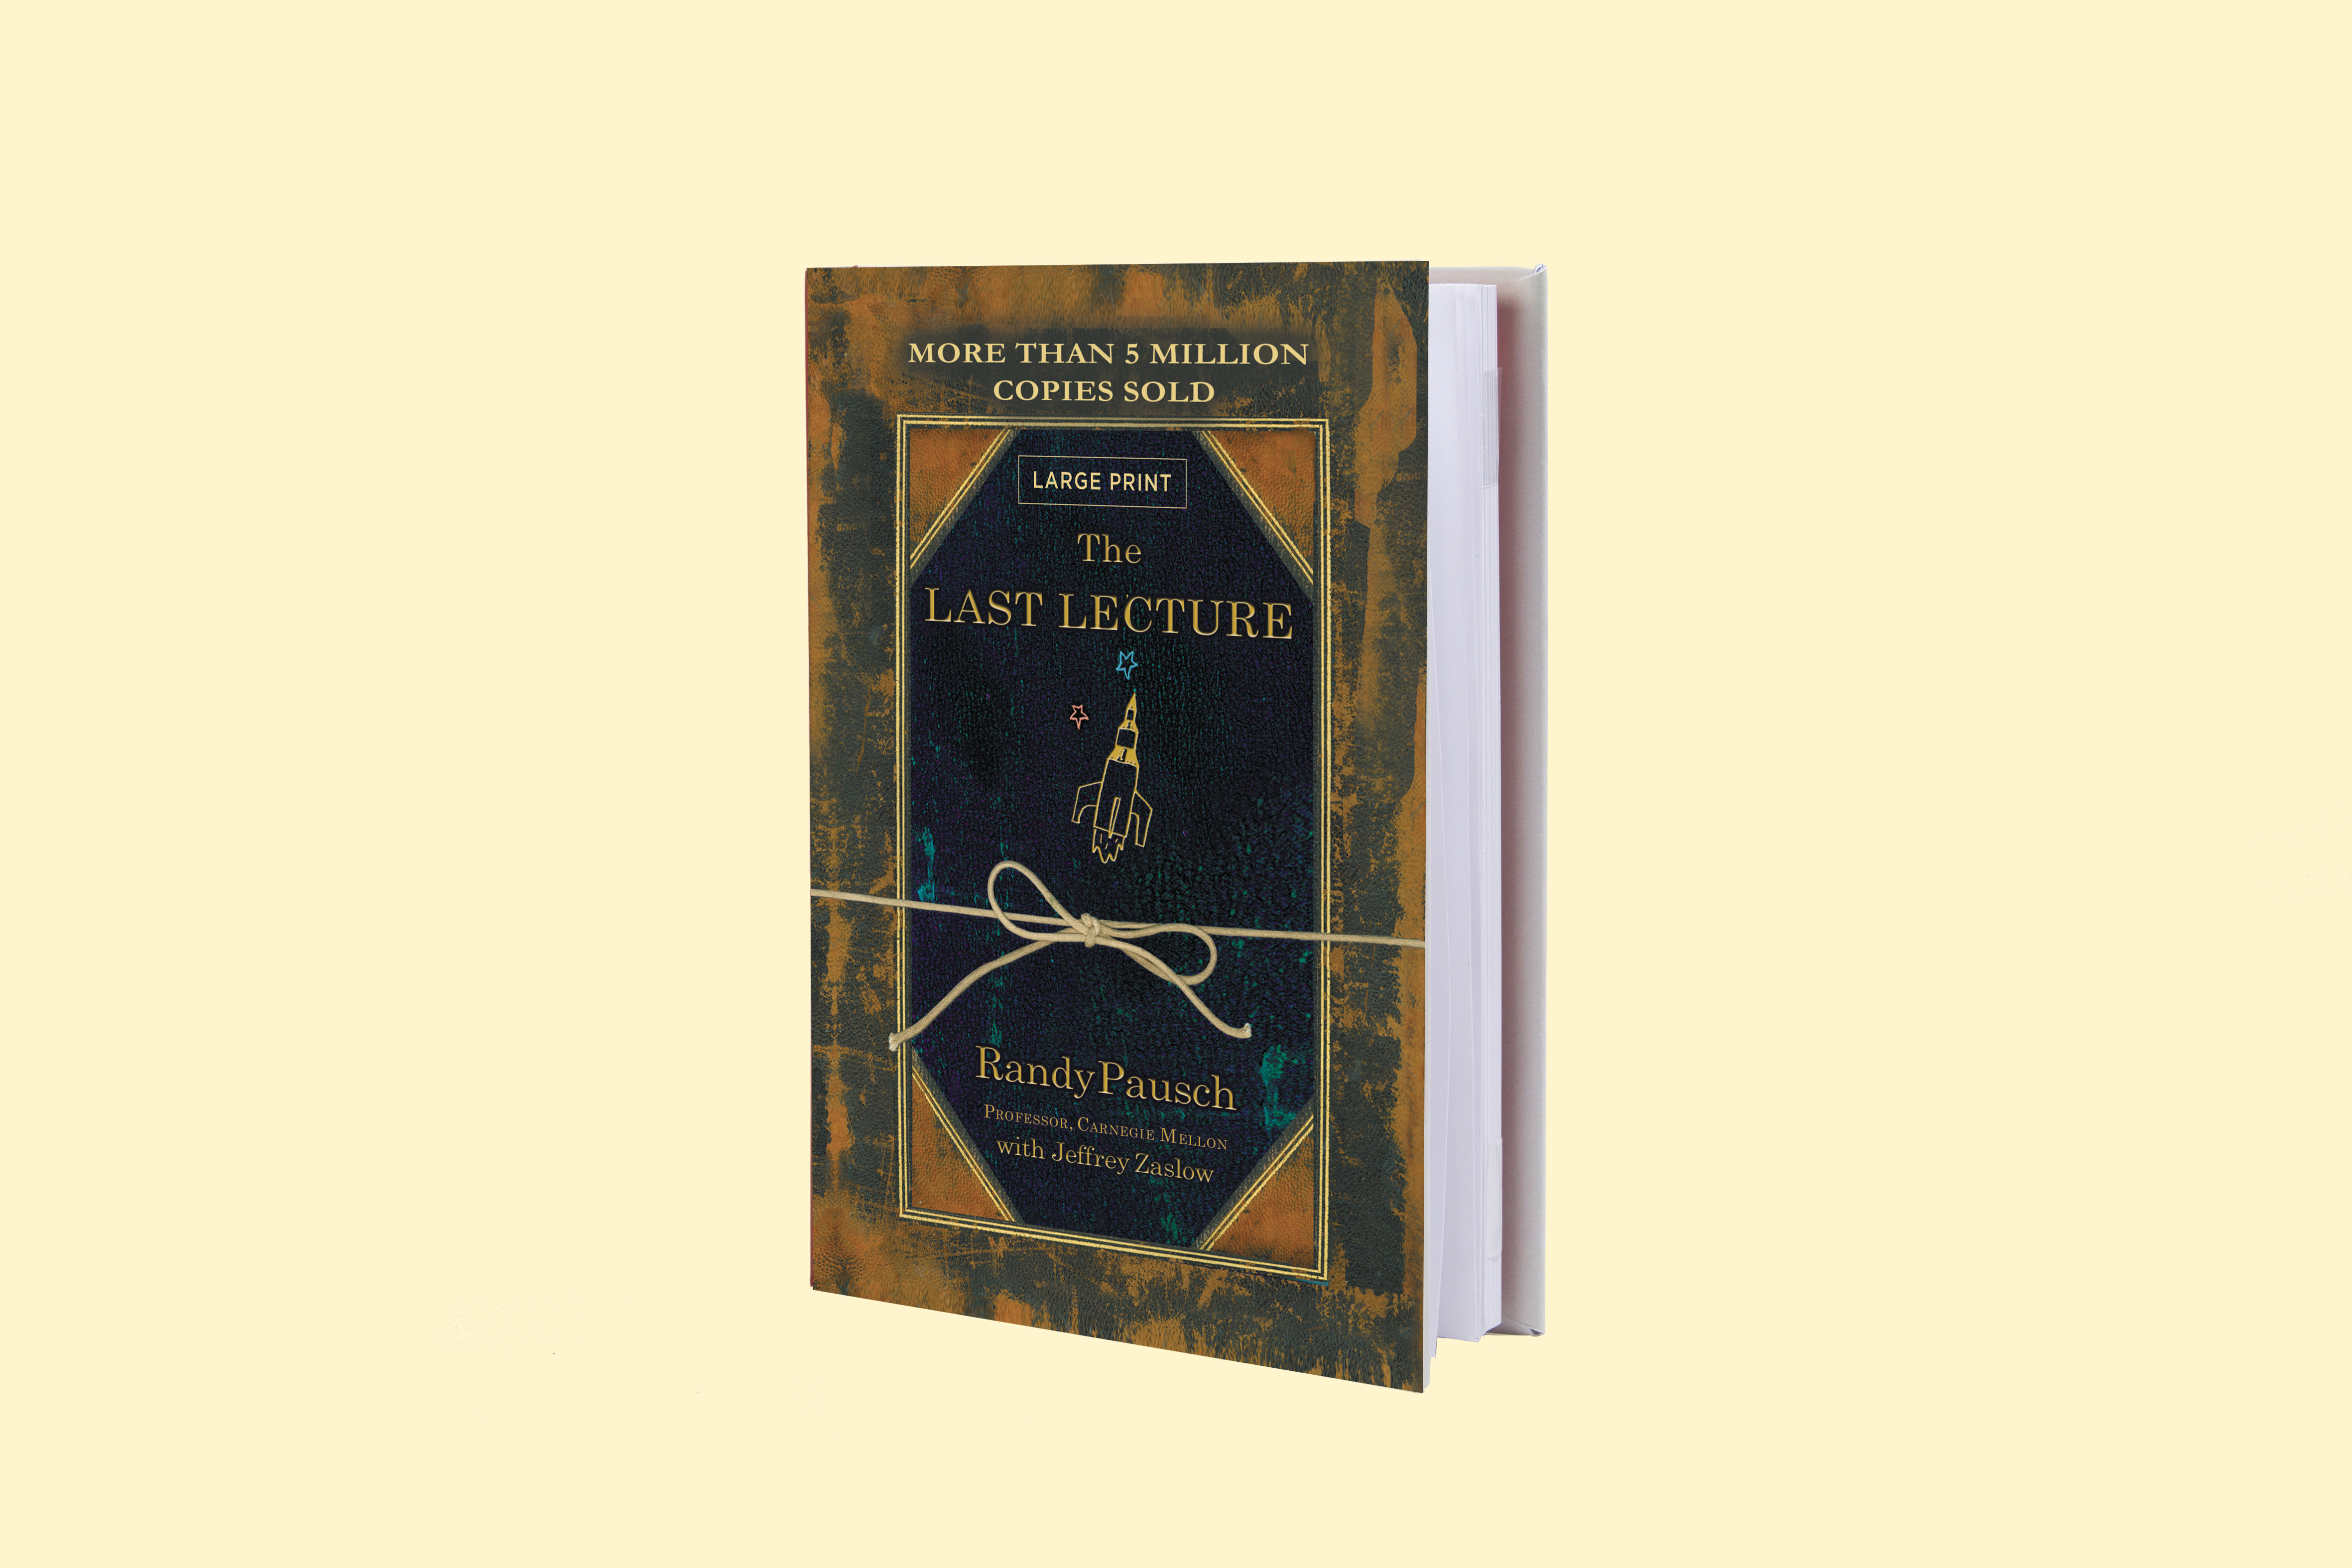 170427-college-grad-gift-guide-last-lecture-book